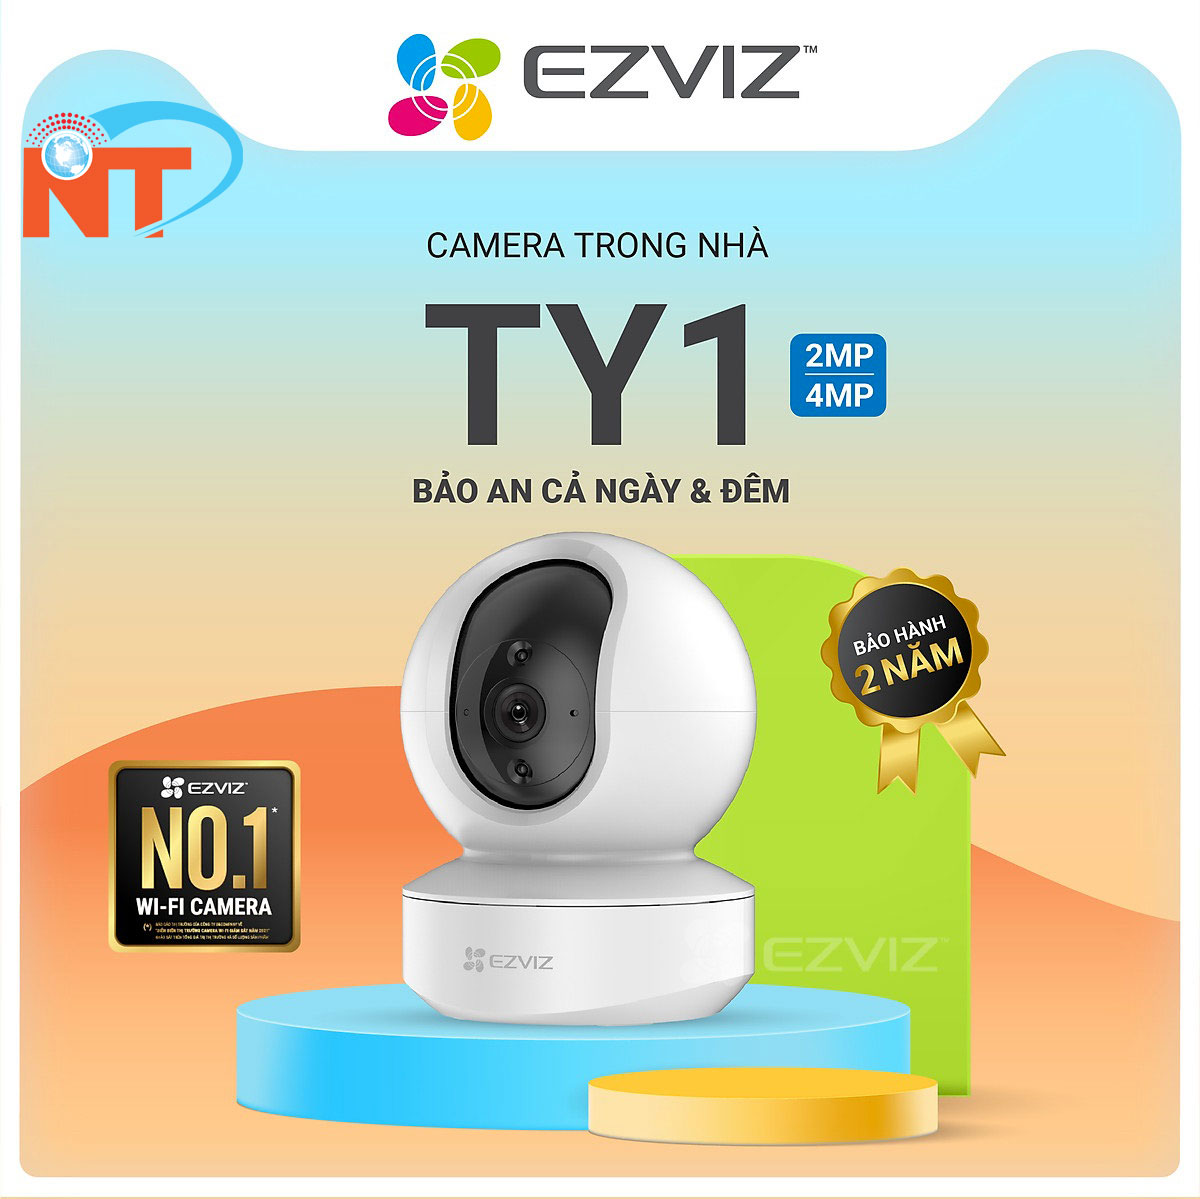 Hình ảnh Camera không dây EZVIZ TY1 siêu nét chống ngược sáng - Hàng chính hãng